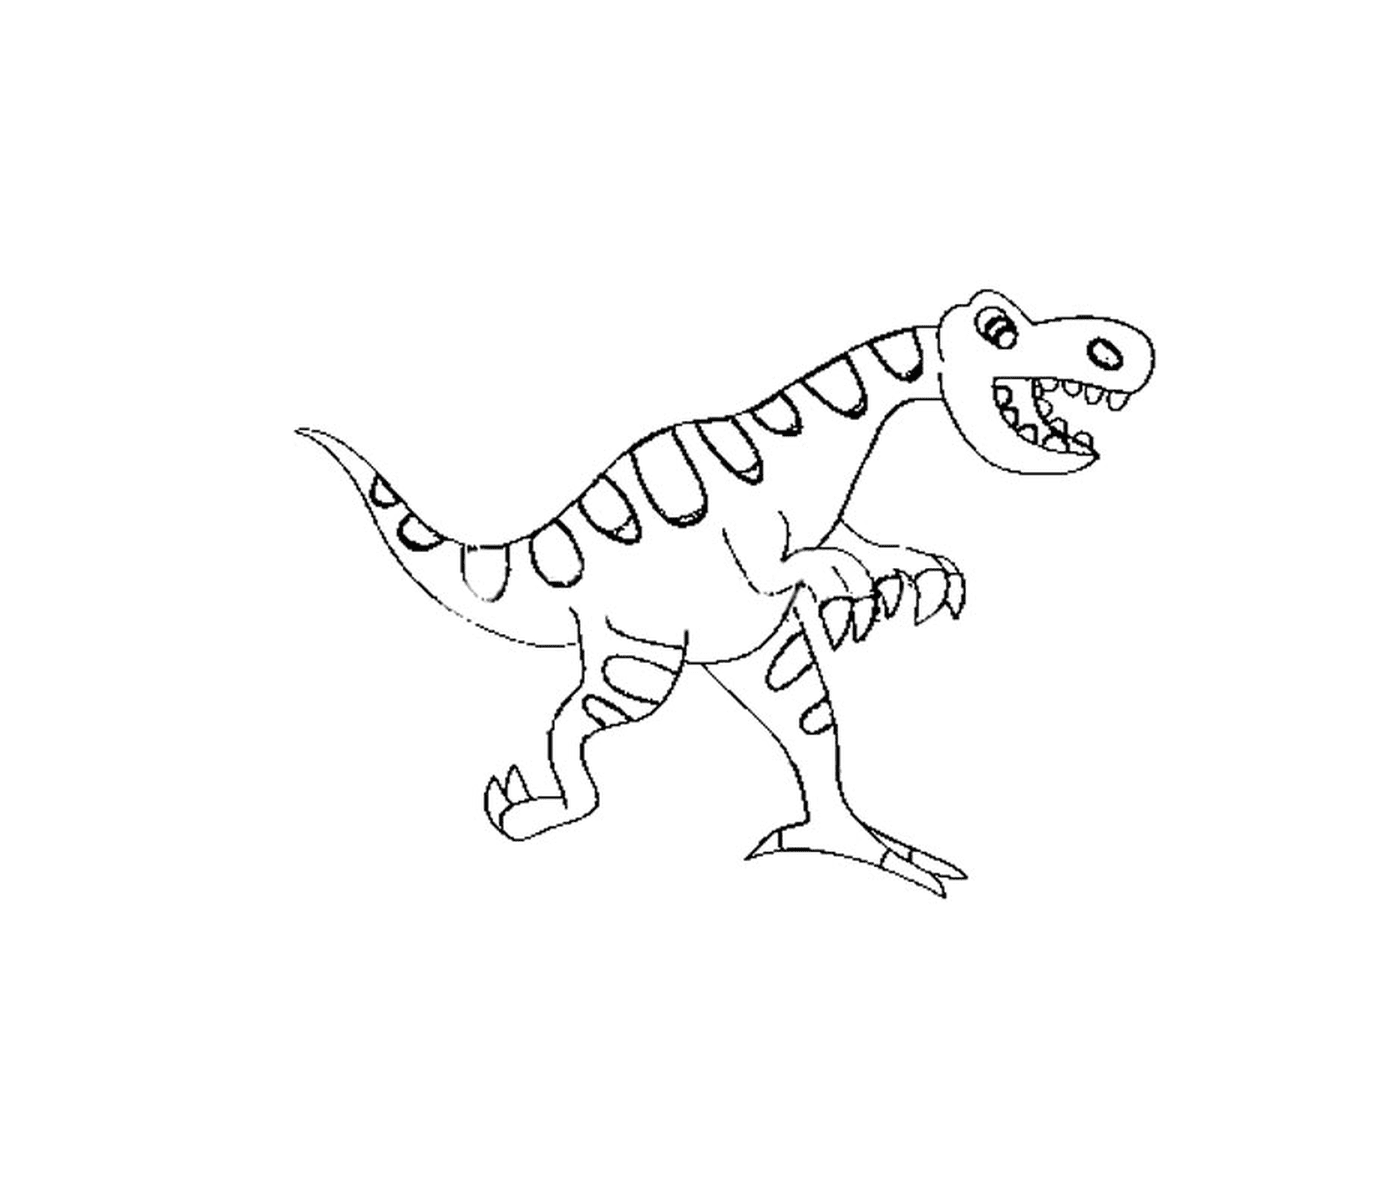   Petit dinosaure de Jurassic Park, sourire adorable 